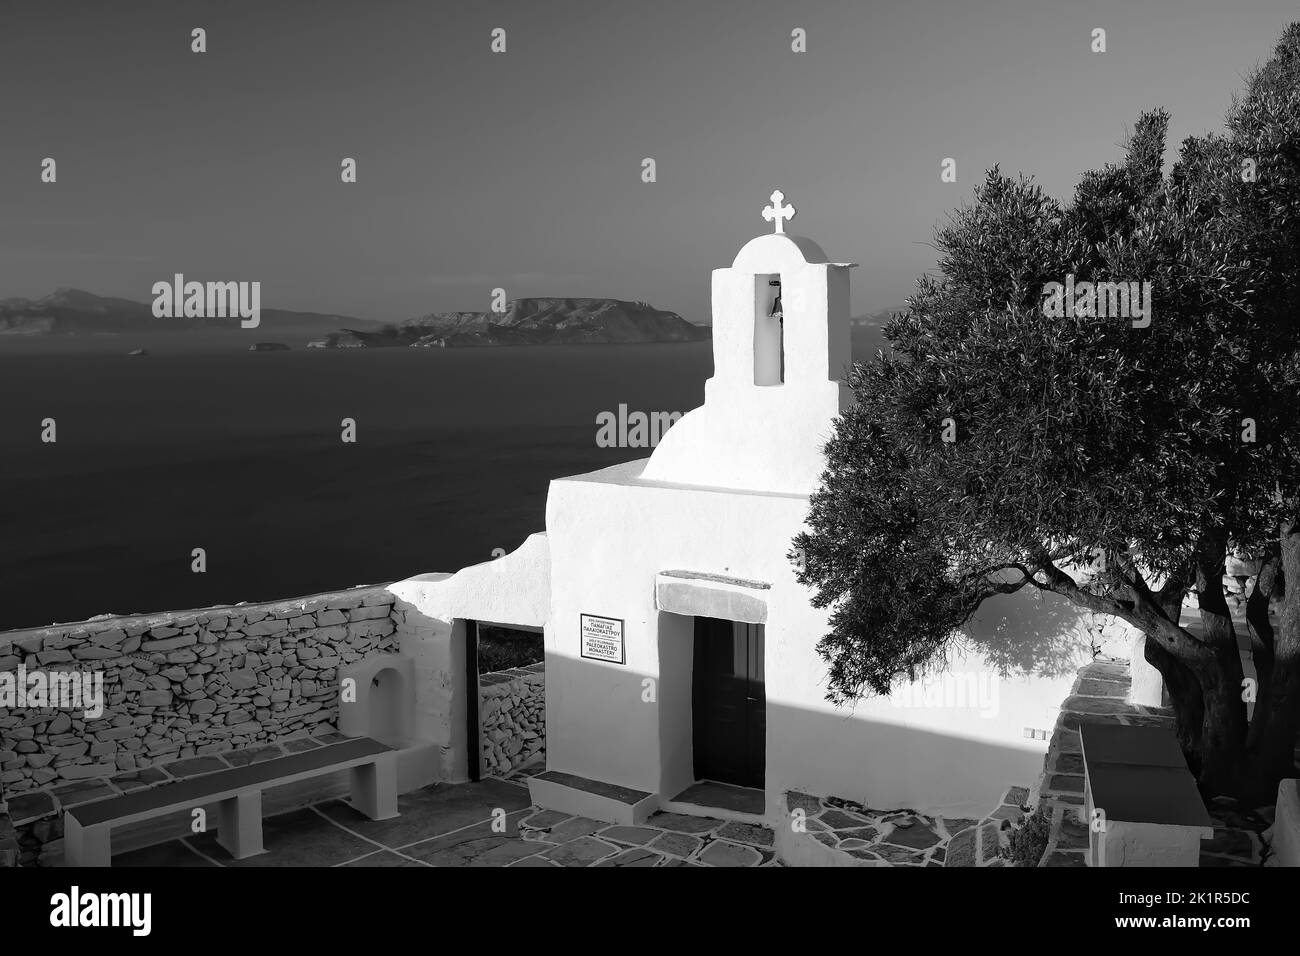 Vue sur le magnifique monastère de Paleokastro blanchi à la chaux et sur la mer Égée en arrière-plan, en noir et blanc Banque D'Images